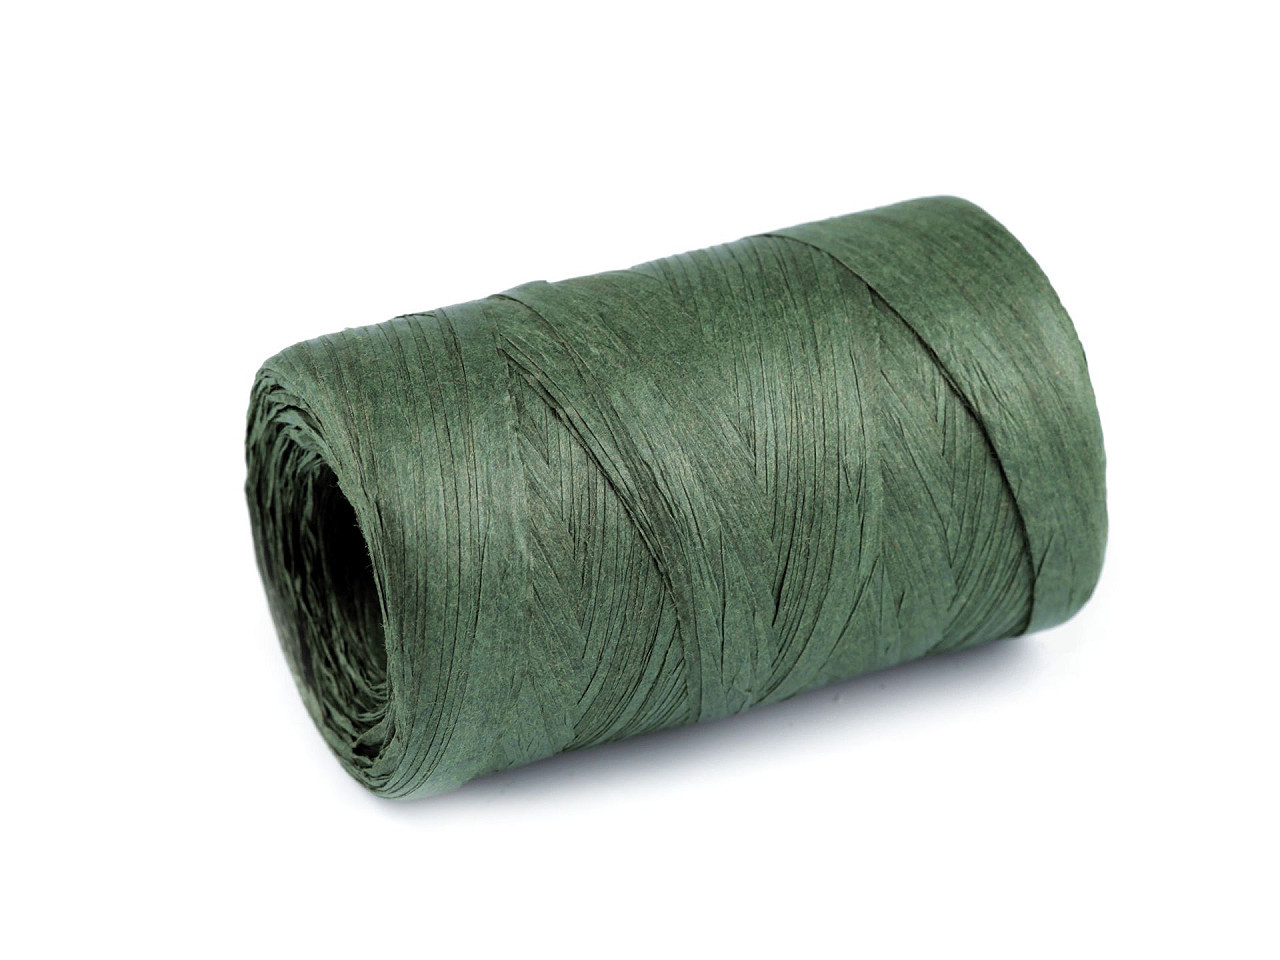 Lýko rafie k pletení tašek šíře 5-8 mm, barva 8 zelená